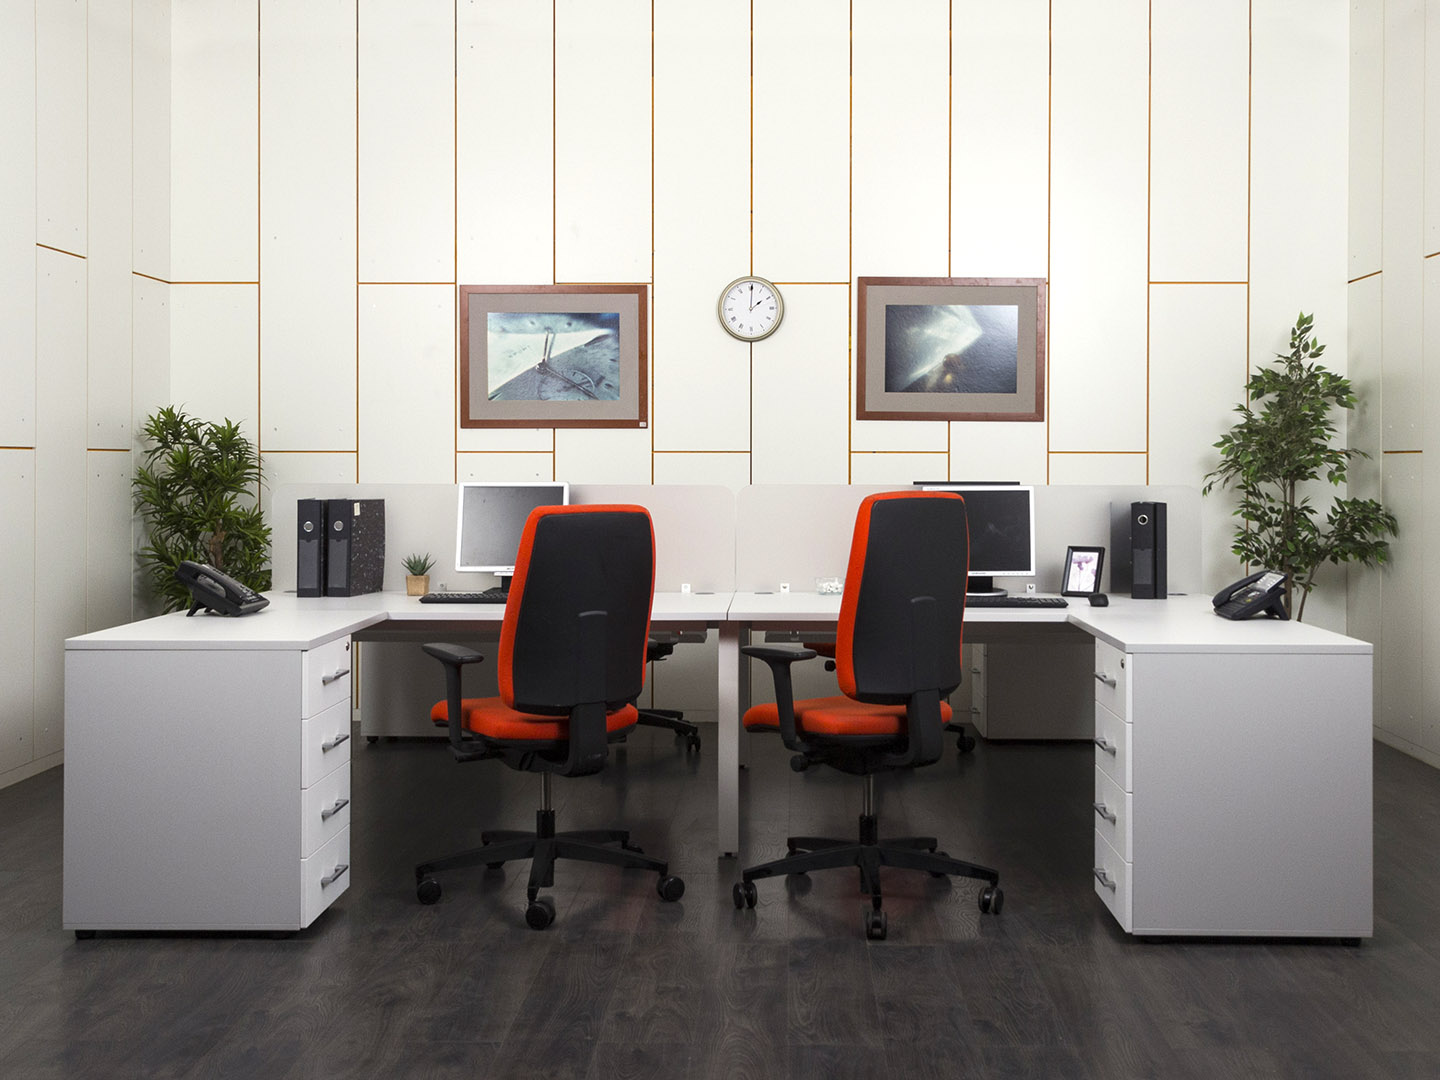 Комплект офисной мебели  3 200х3 250х740 ЛДСП Белый   (КОМБ-08071)